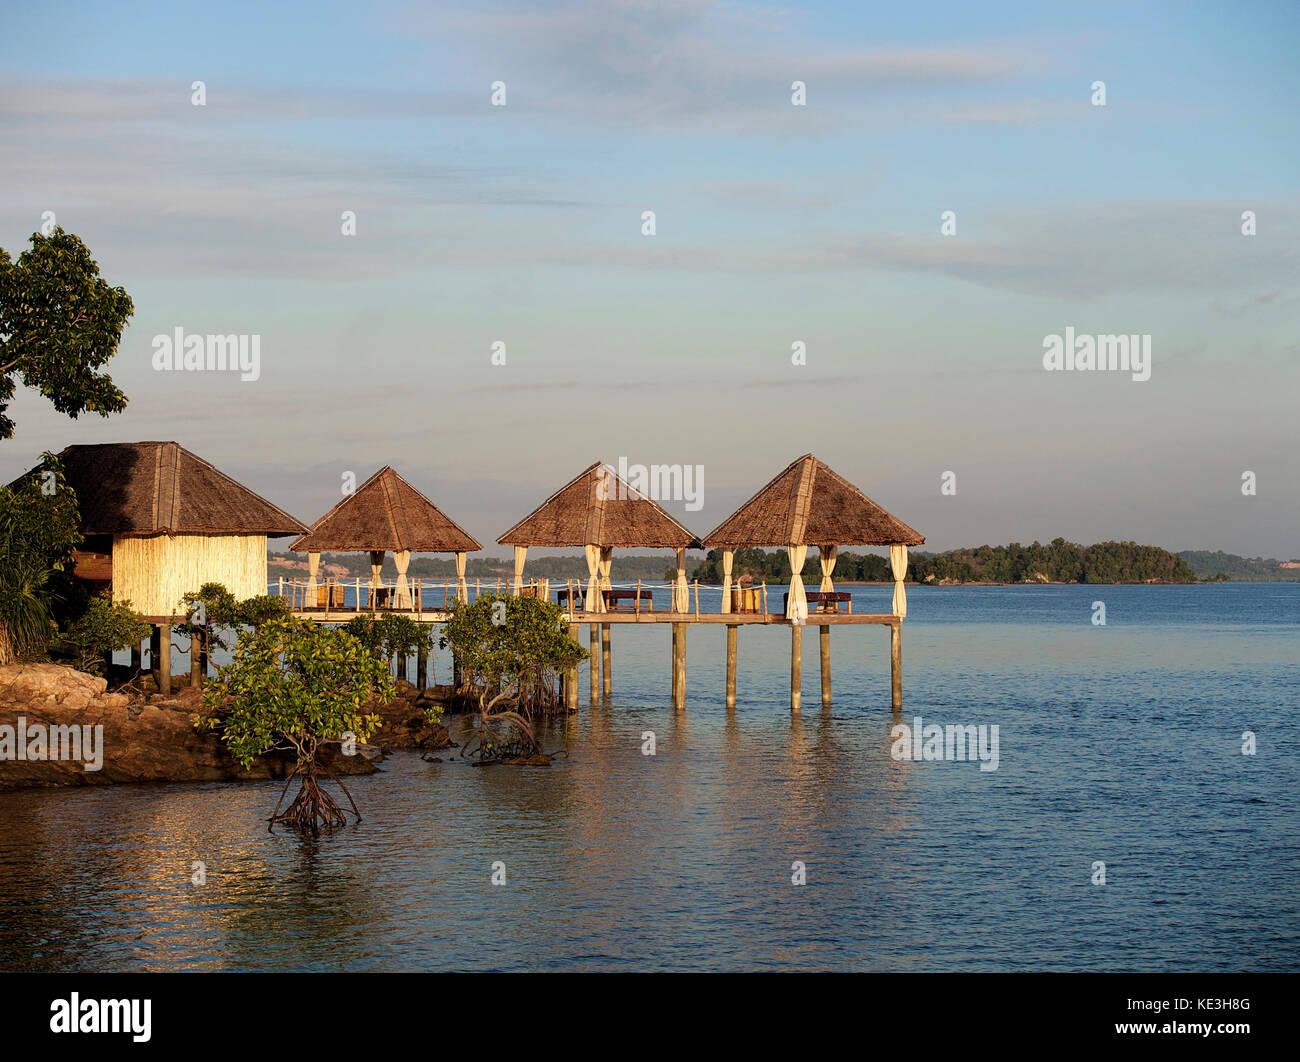 Le matin, au-dessus des pavillons de massage aquatique du Telunas Private Island Resort, dans les îles Riau, en Indonésie Banque D'Images